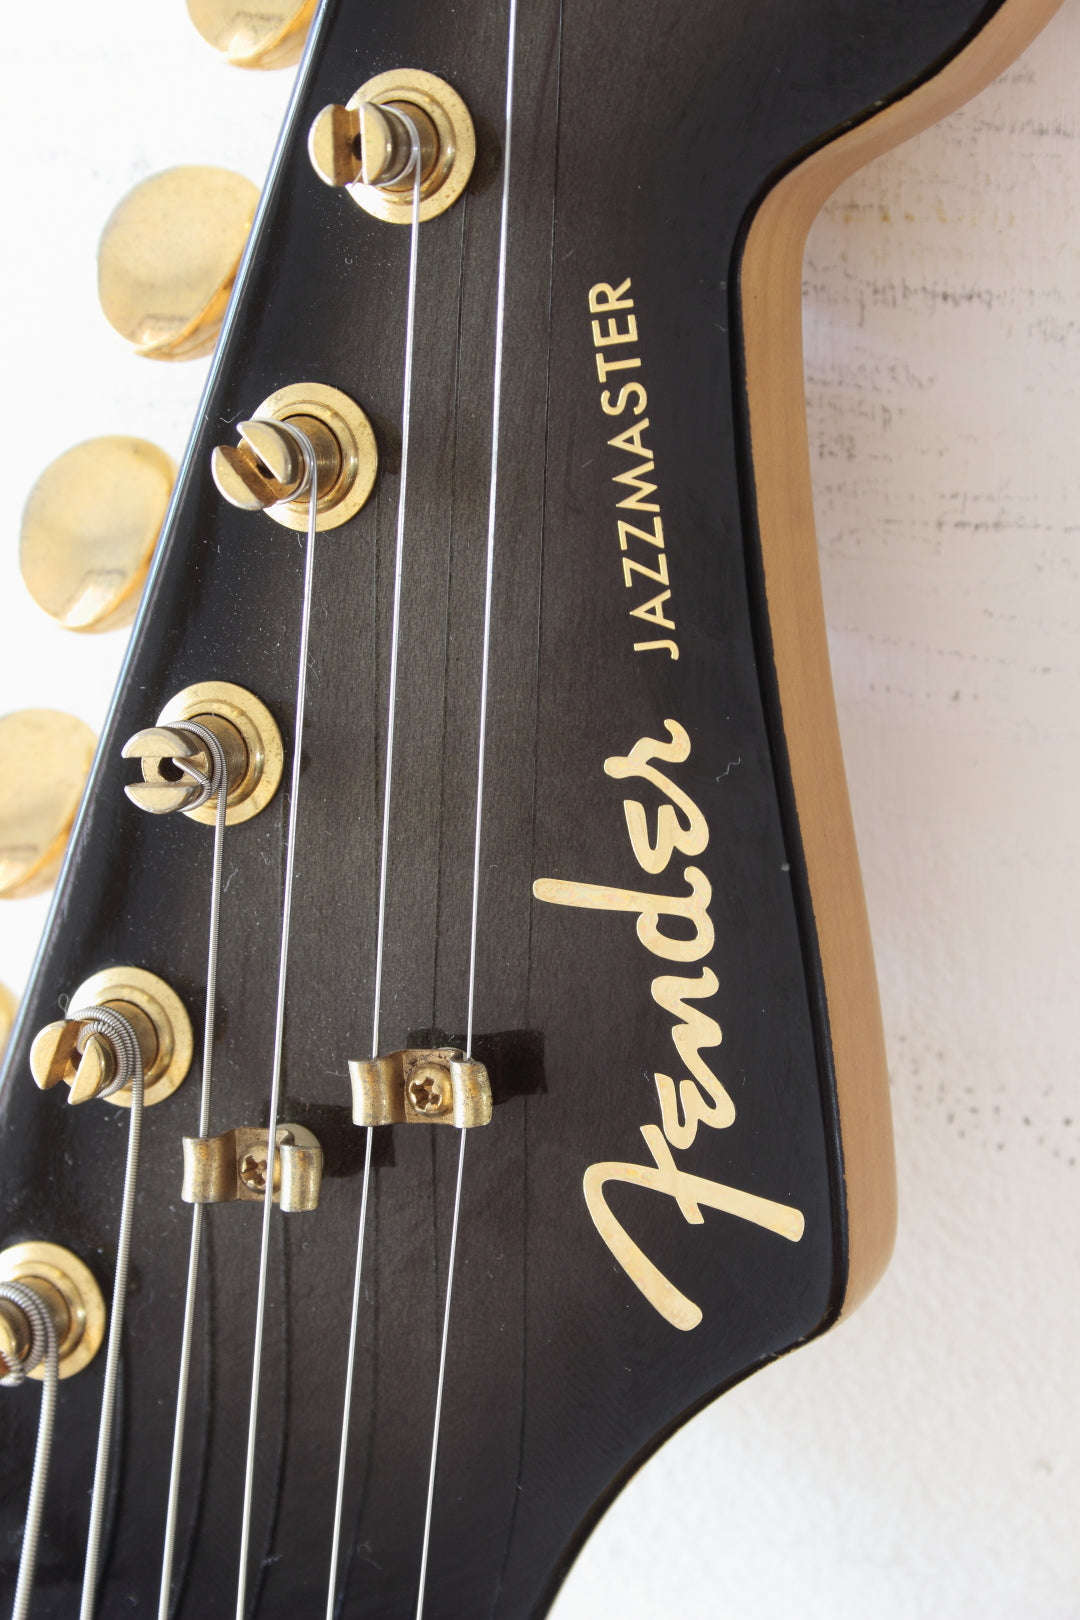 Fender Japan The Ventures Signature Jazzmaster JM-165VR Black Sunburst 1996